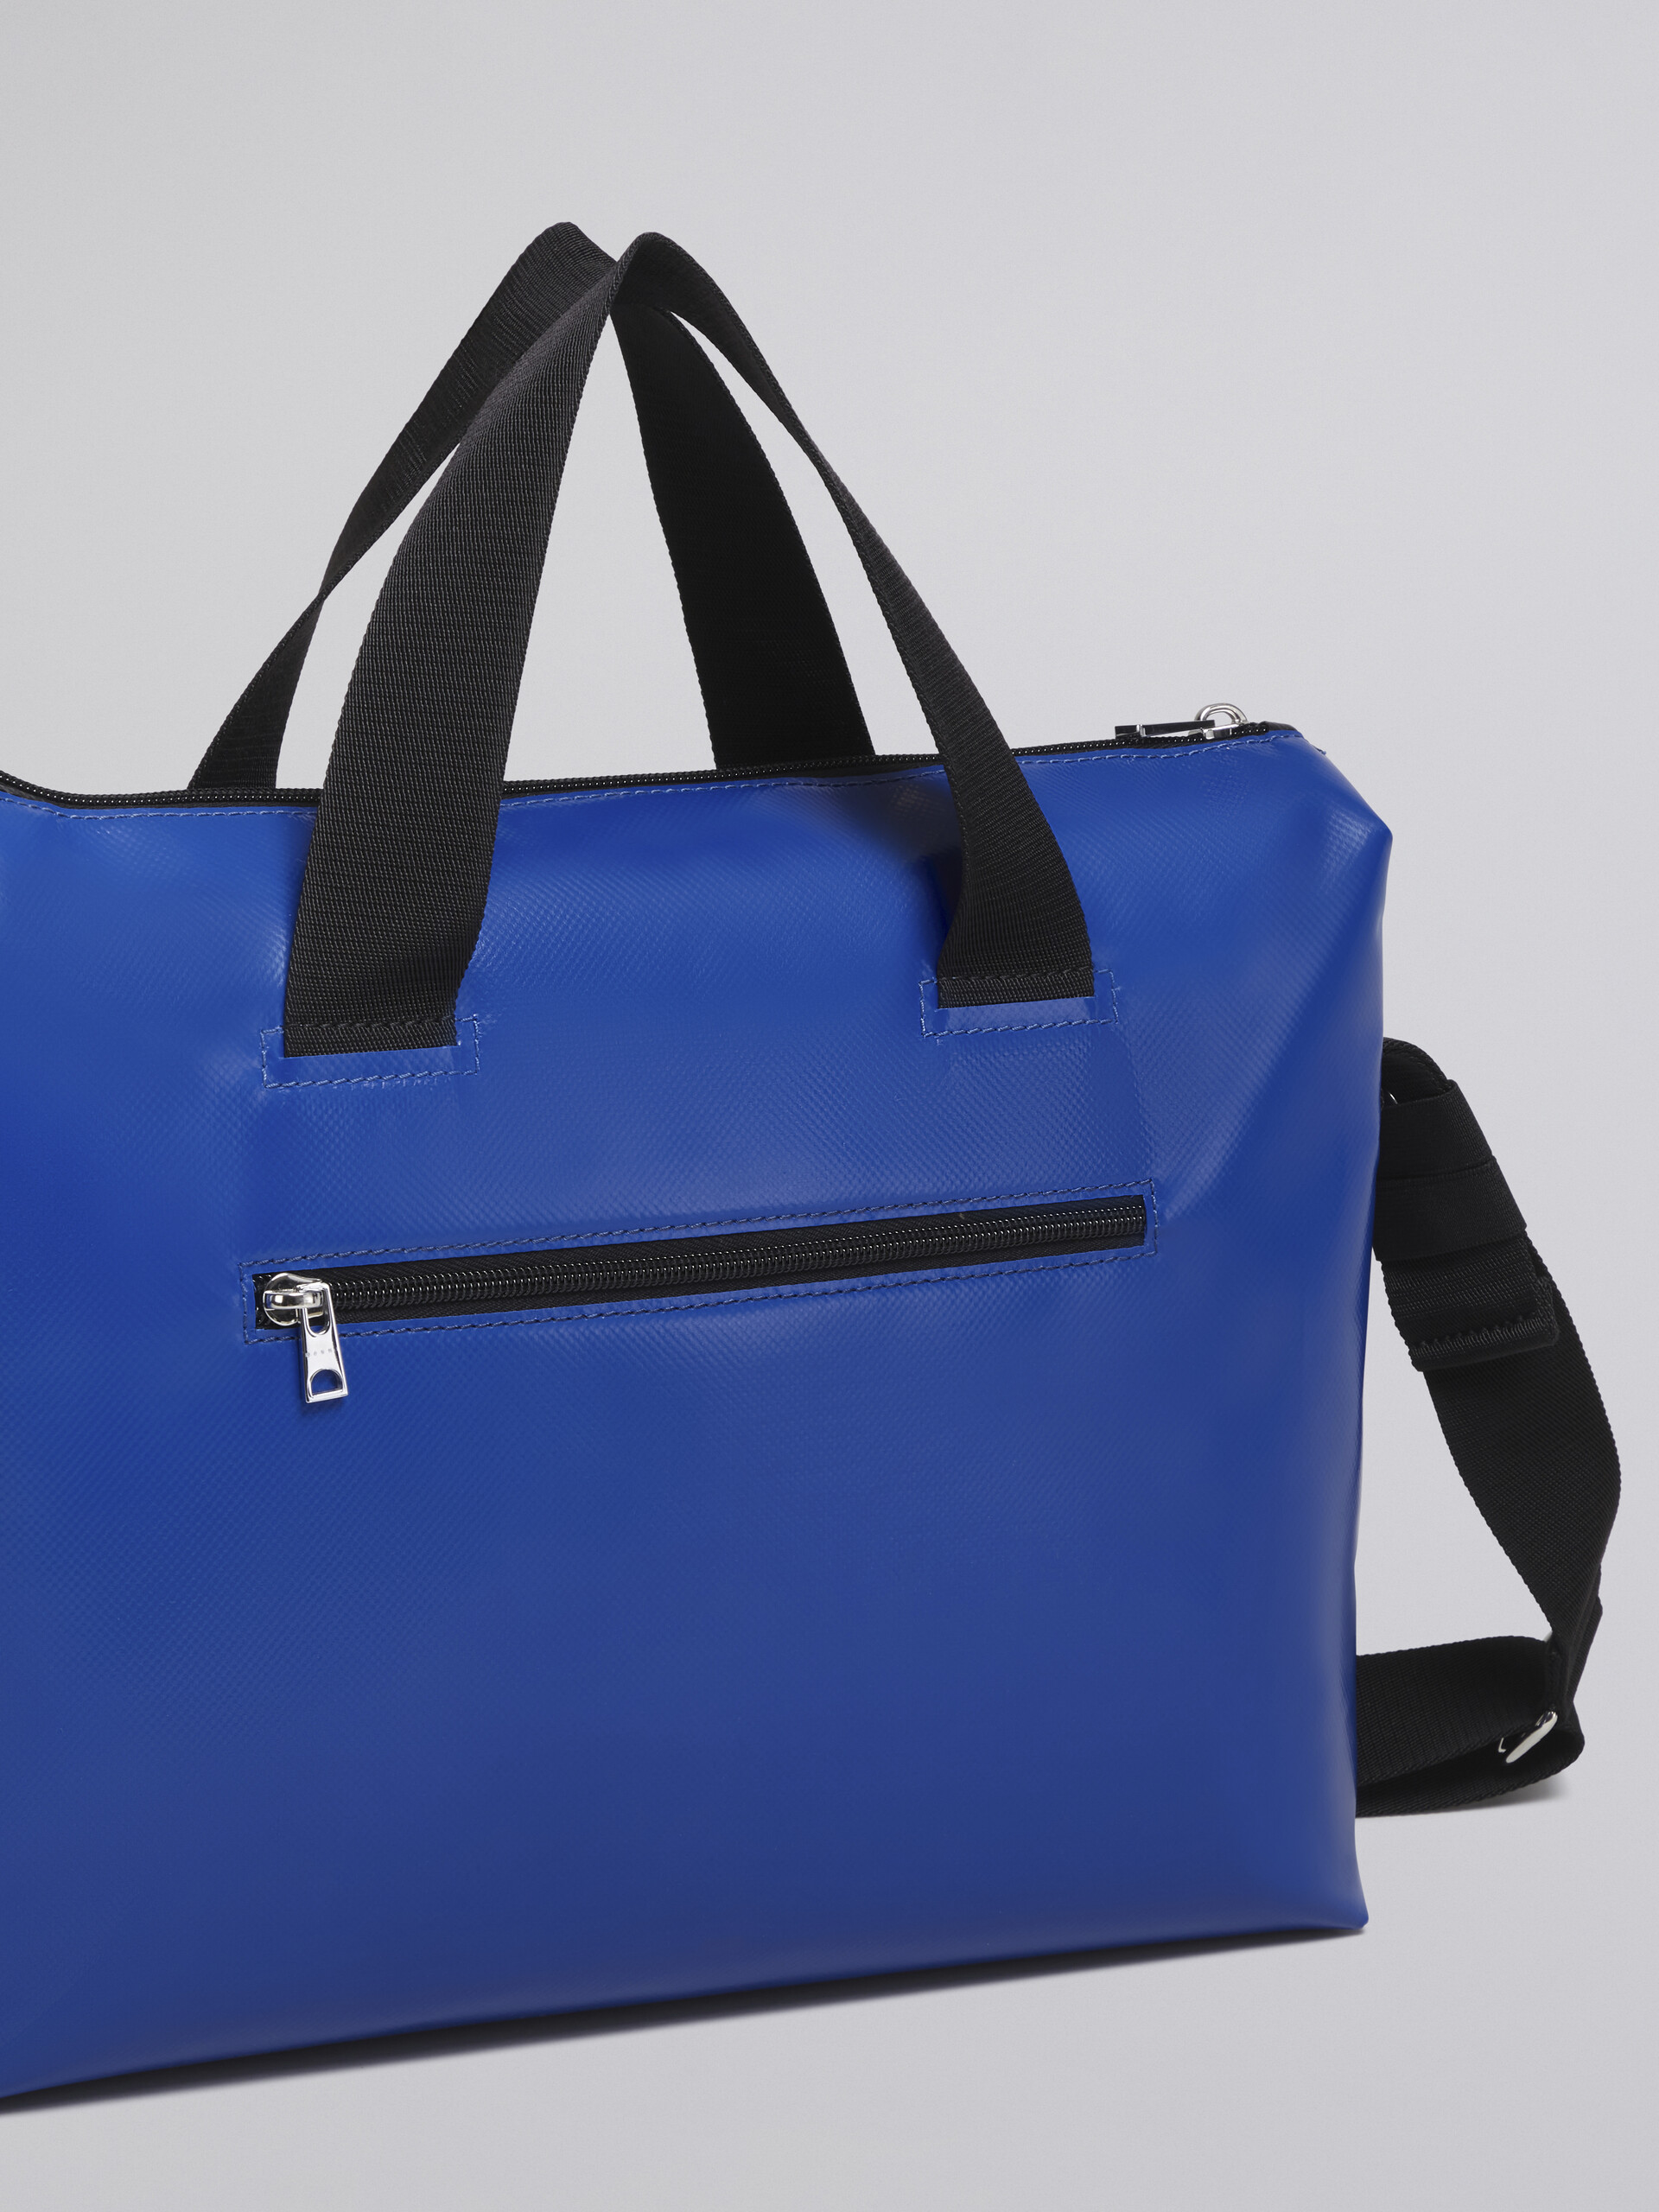 TRIBECA Tasche in Schwarz und Blau - Handtaschen - Image 5